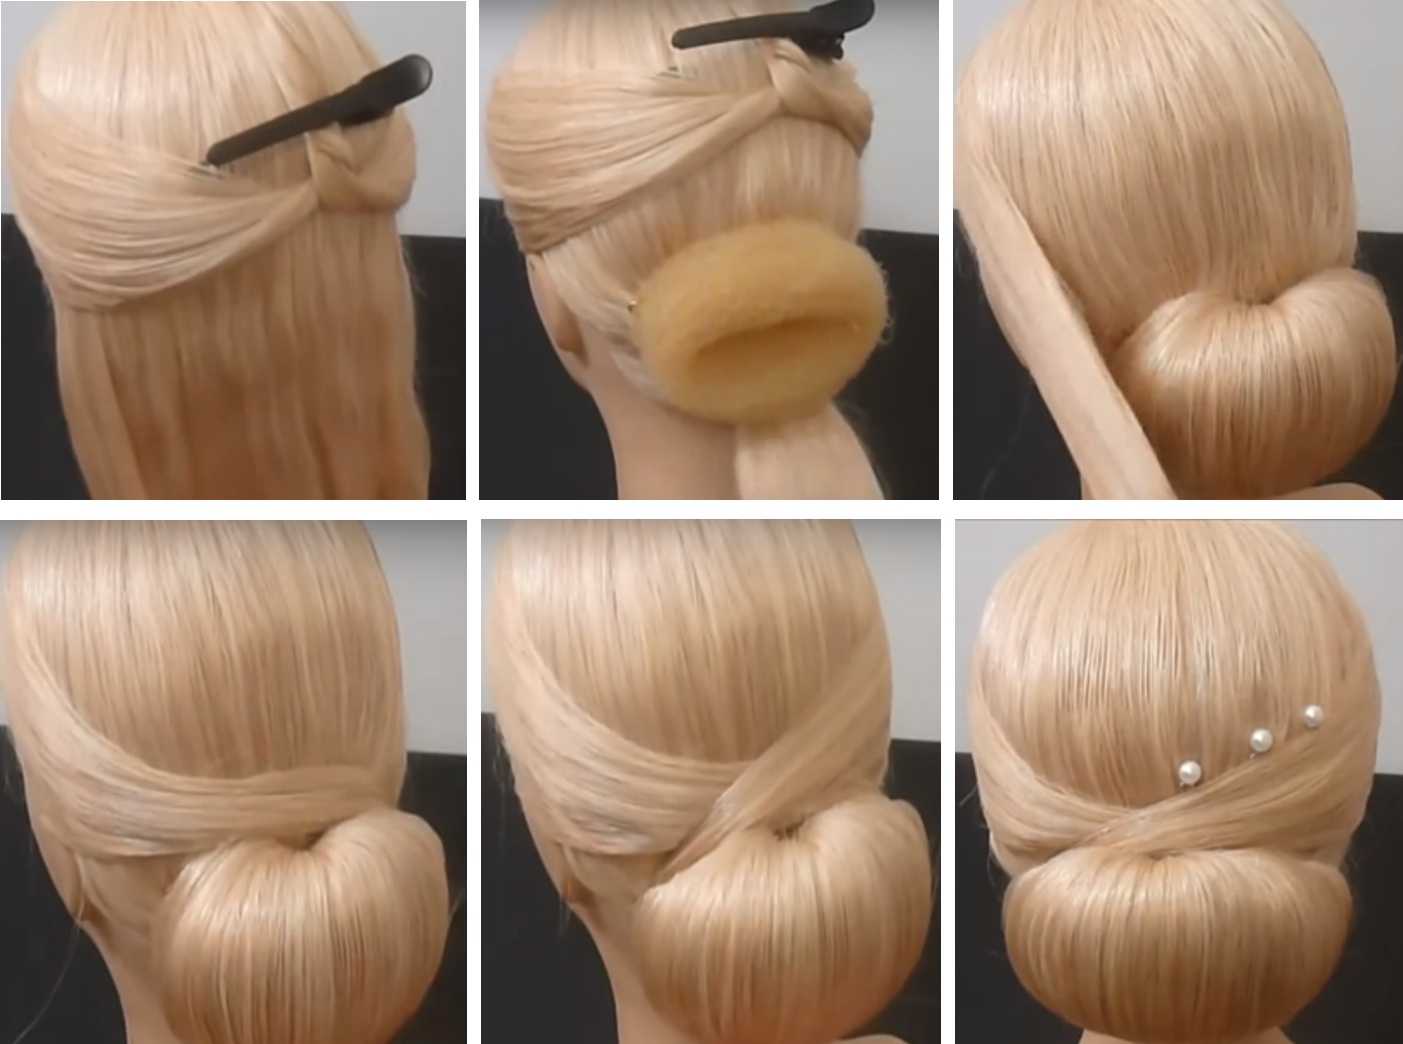 Бабетта: фото, как сделать прическу на голове в стиле 60-х в домашних условиях, пошаговая инструкция выполнения пучка своими руками на короткие, длинные, средние волосы с валиком, шиньоном, кому подхо